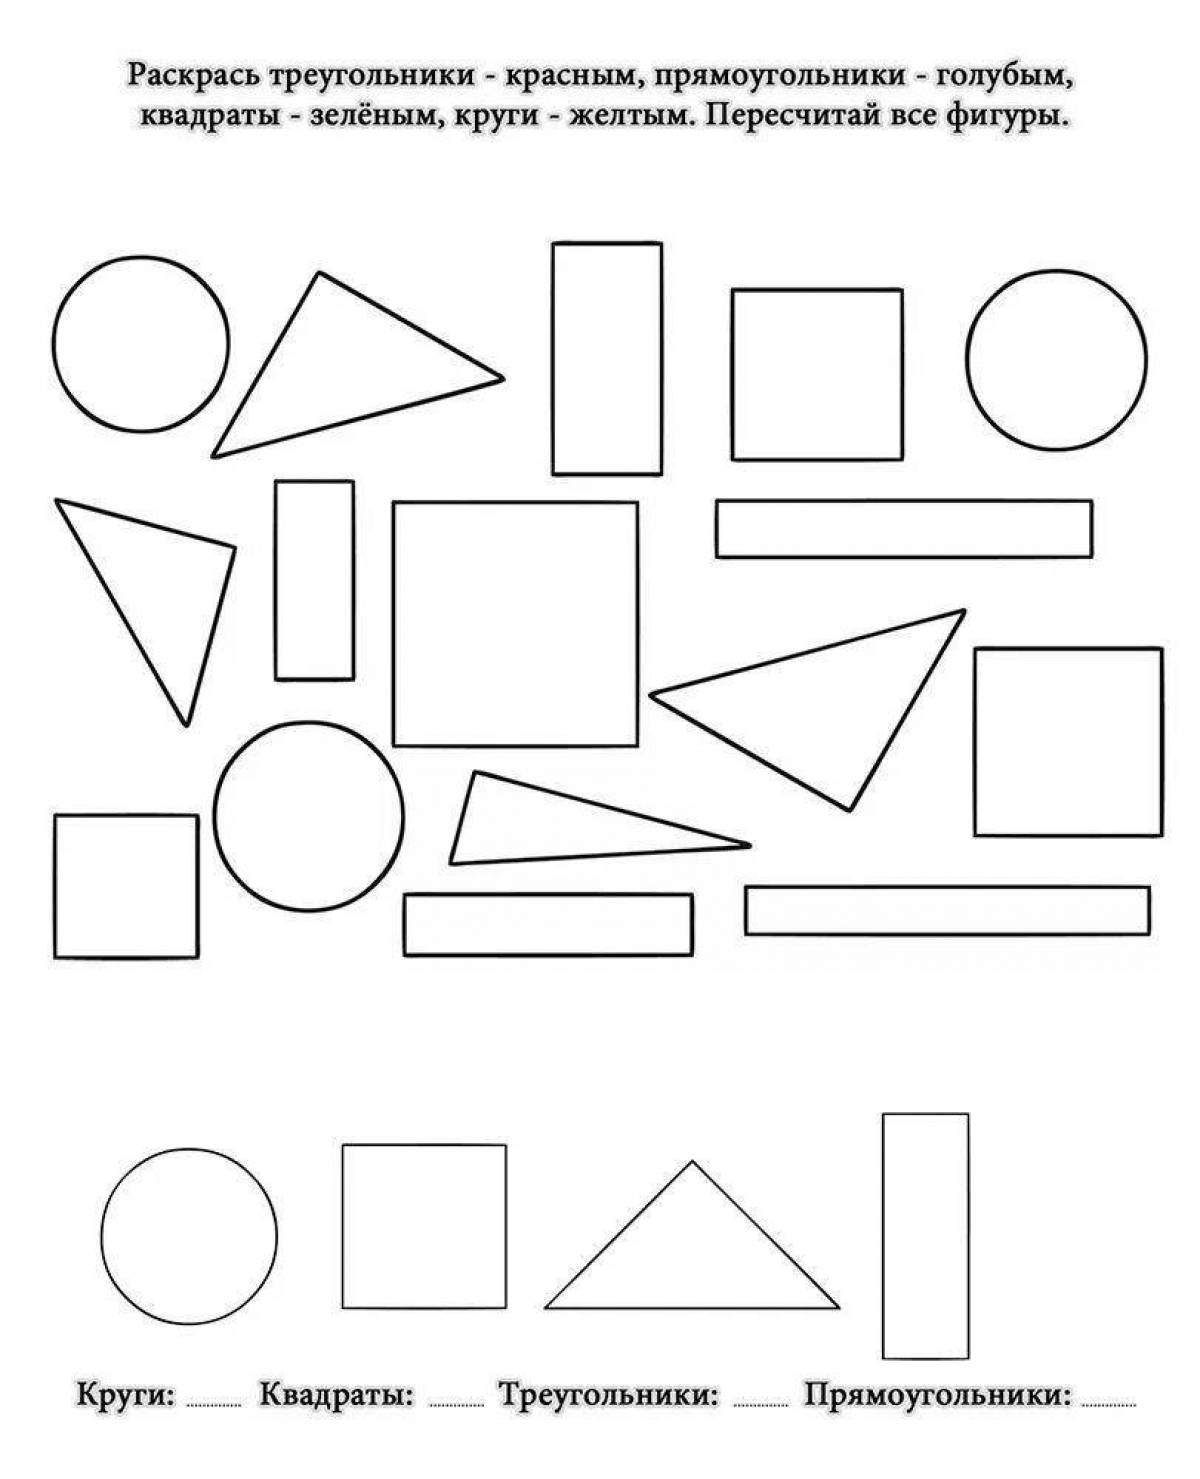 Игры квадрат круг треугольник. Задания с геом фигурами для дошкольников. Задания для дошкольников развивающие геометрические фигуры. Задания на закрепление геометрических фигур для дошкольников. Задания для дошкольников математика геометрические фигуры.